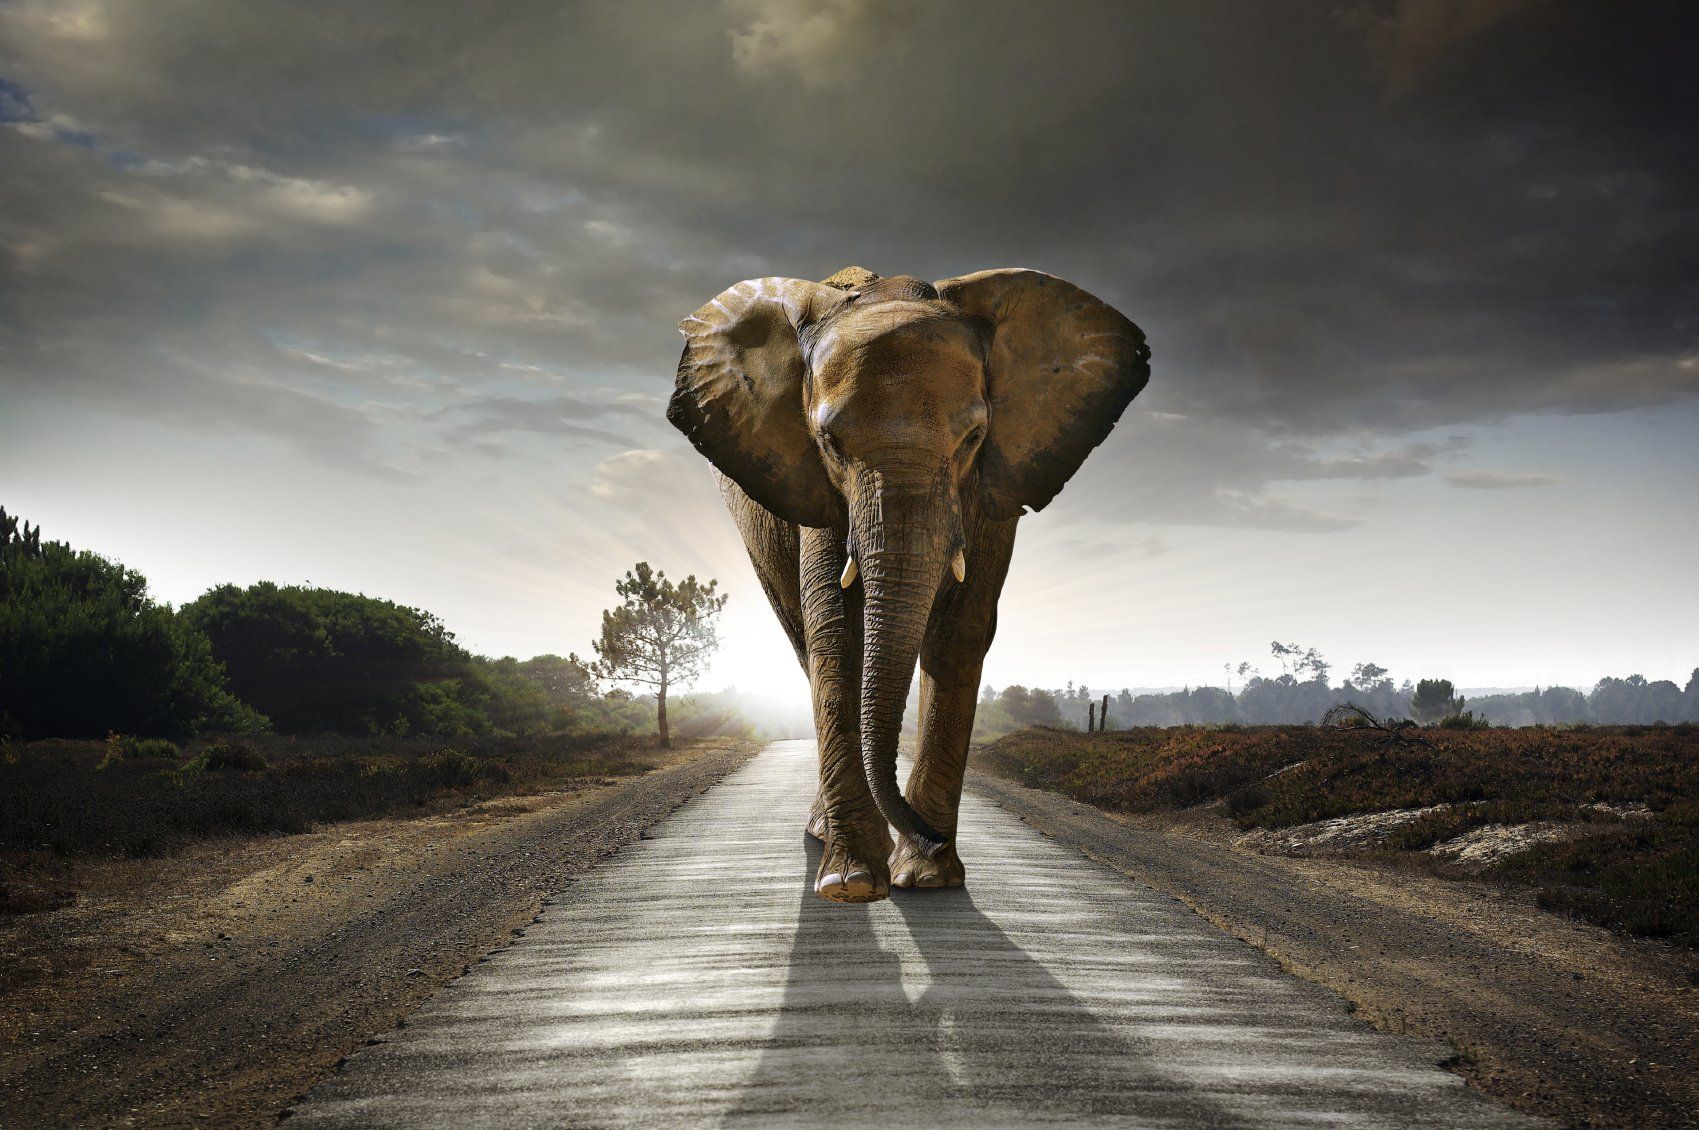 Article by DA - Souvenez-vous, les consciences évoluent... conservez votre mémoire d'éléphant